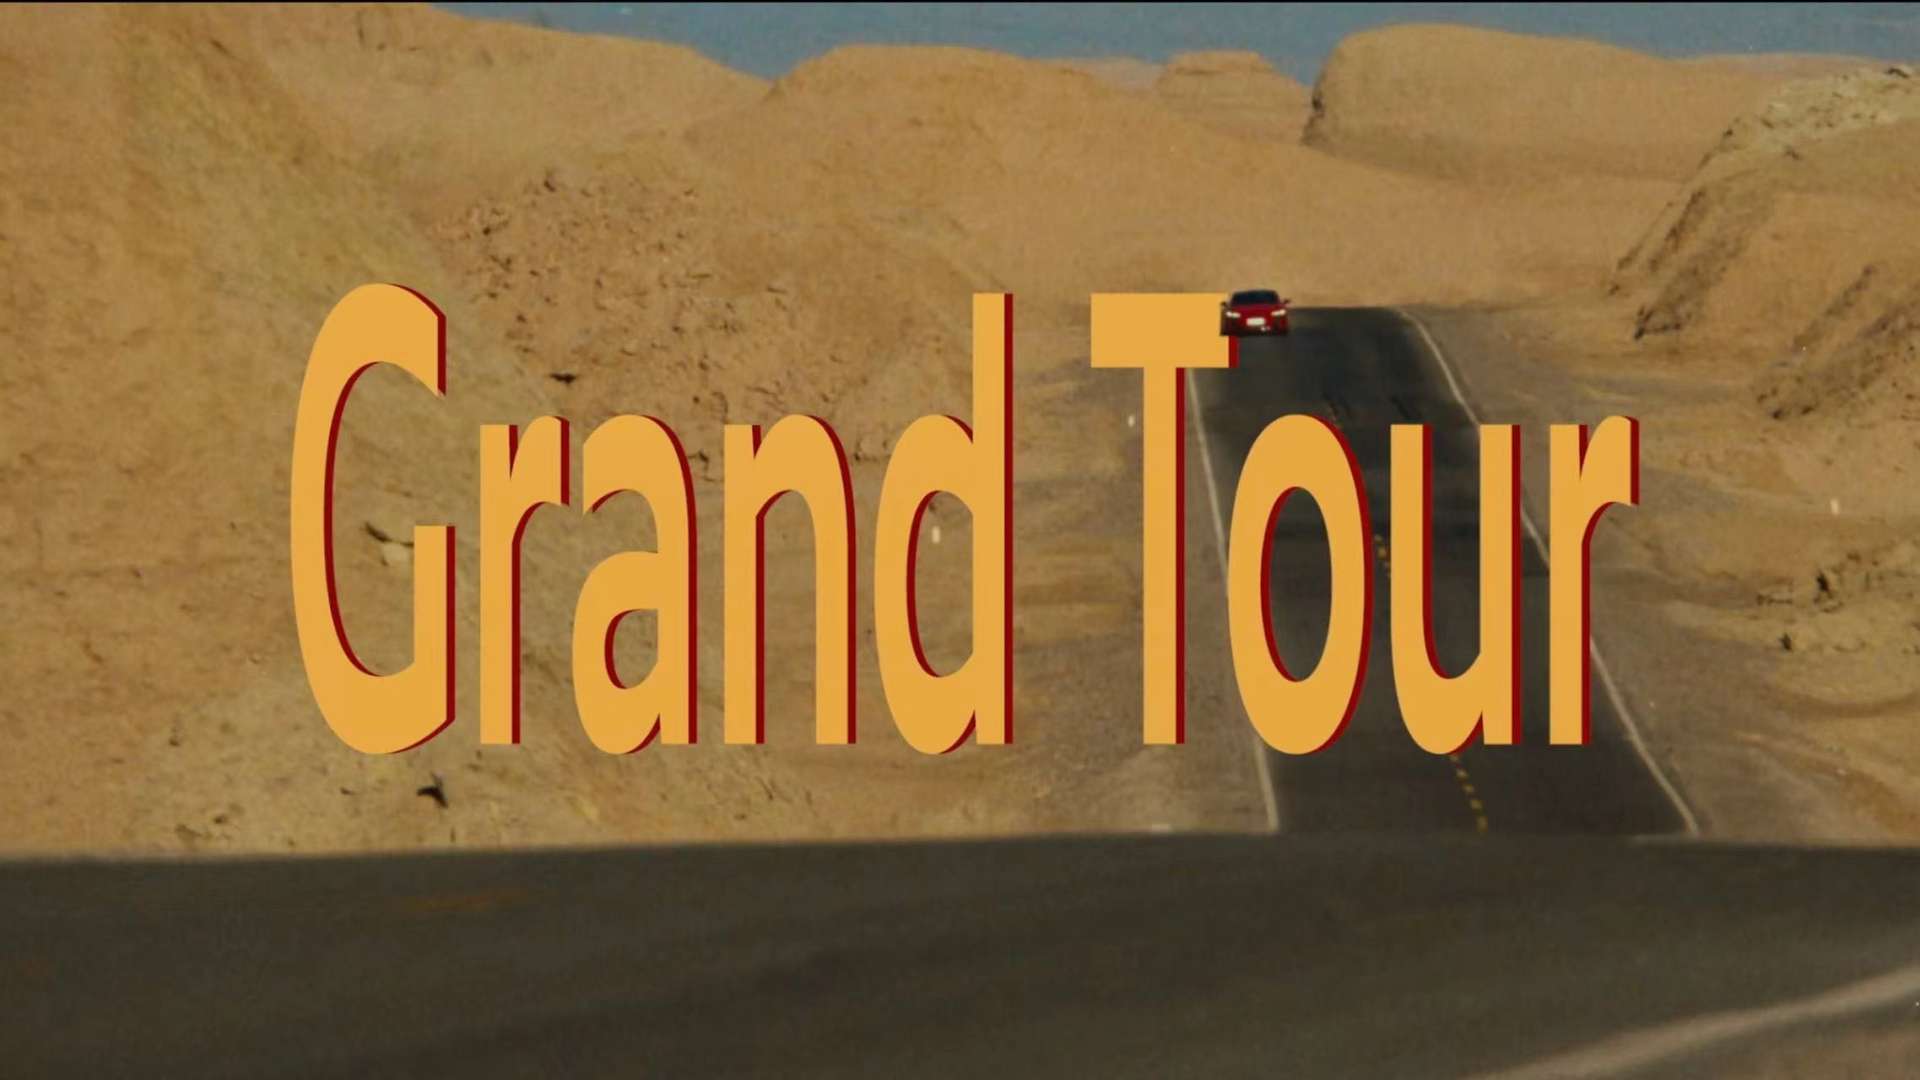 RS e-tron GT 奥迪X 韩寒「Grand Tour」